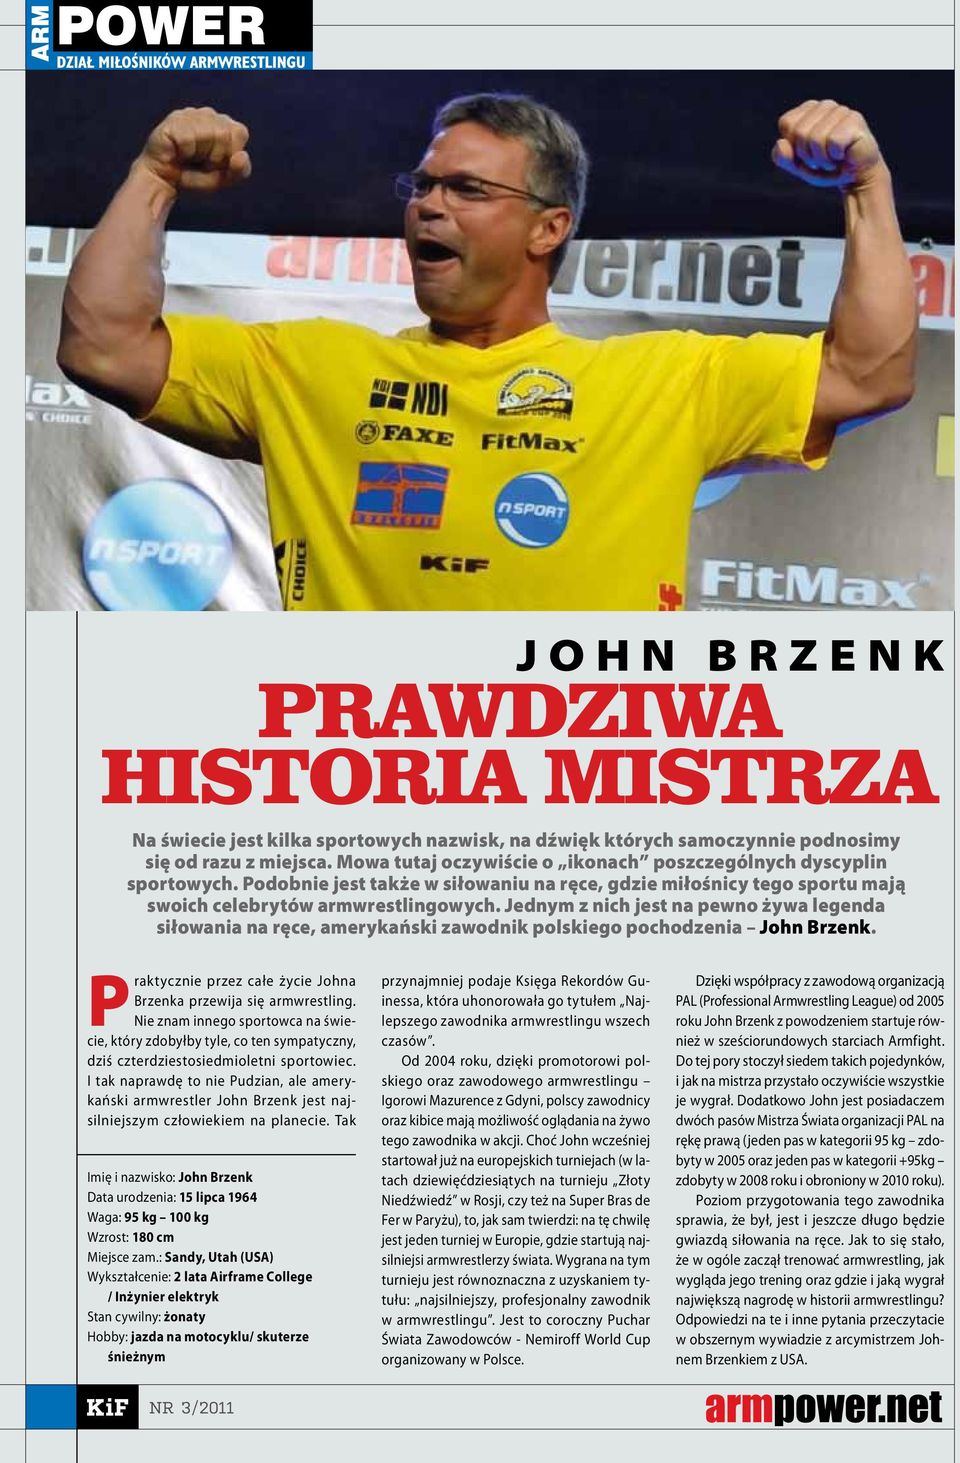 Jednym z nich jest na pewno żywa legenda siłowania na ręce, amerykański zawodnik polskiego pochodzenia John Brzenk. Praktycznie przez całe życie Johna Brzenka przewija się armwrestling.